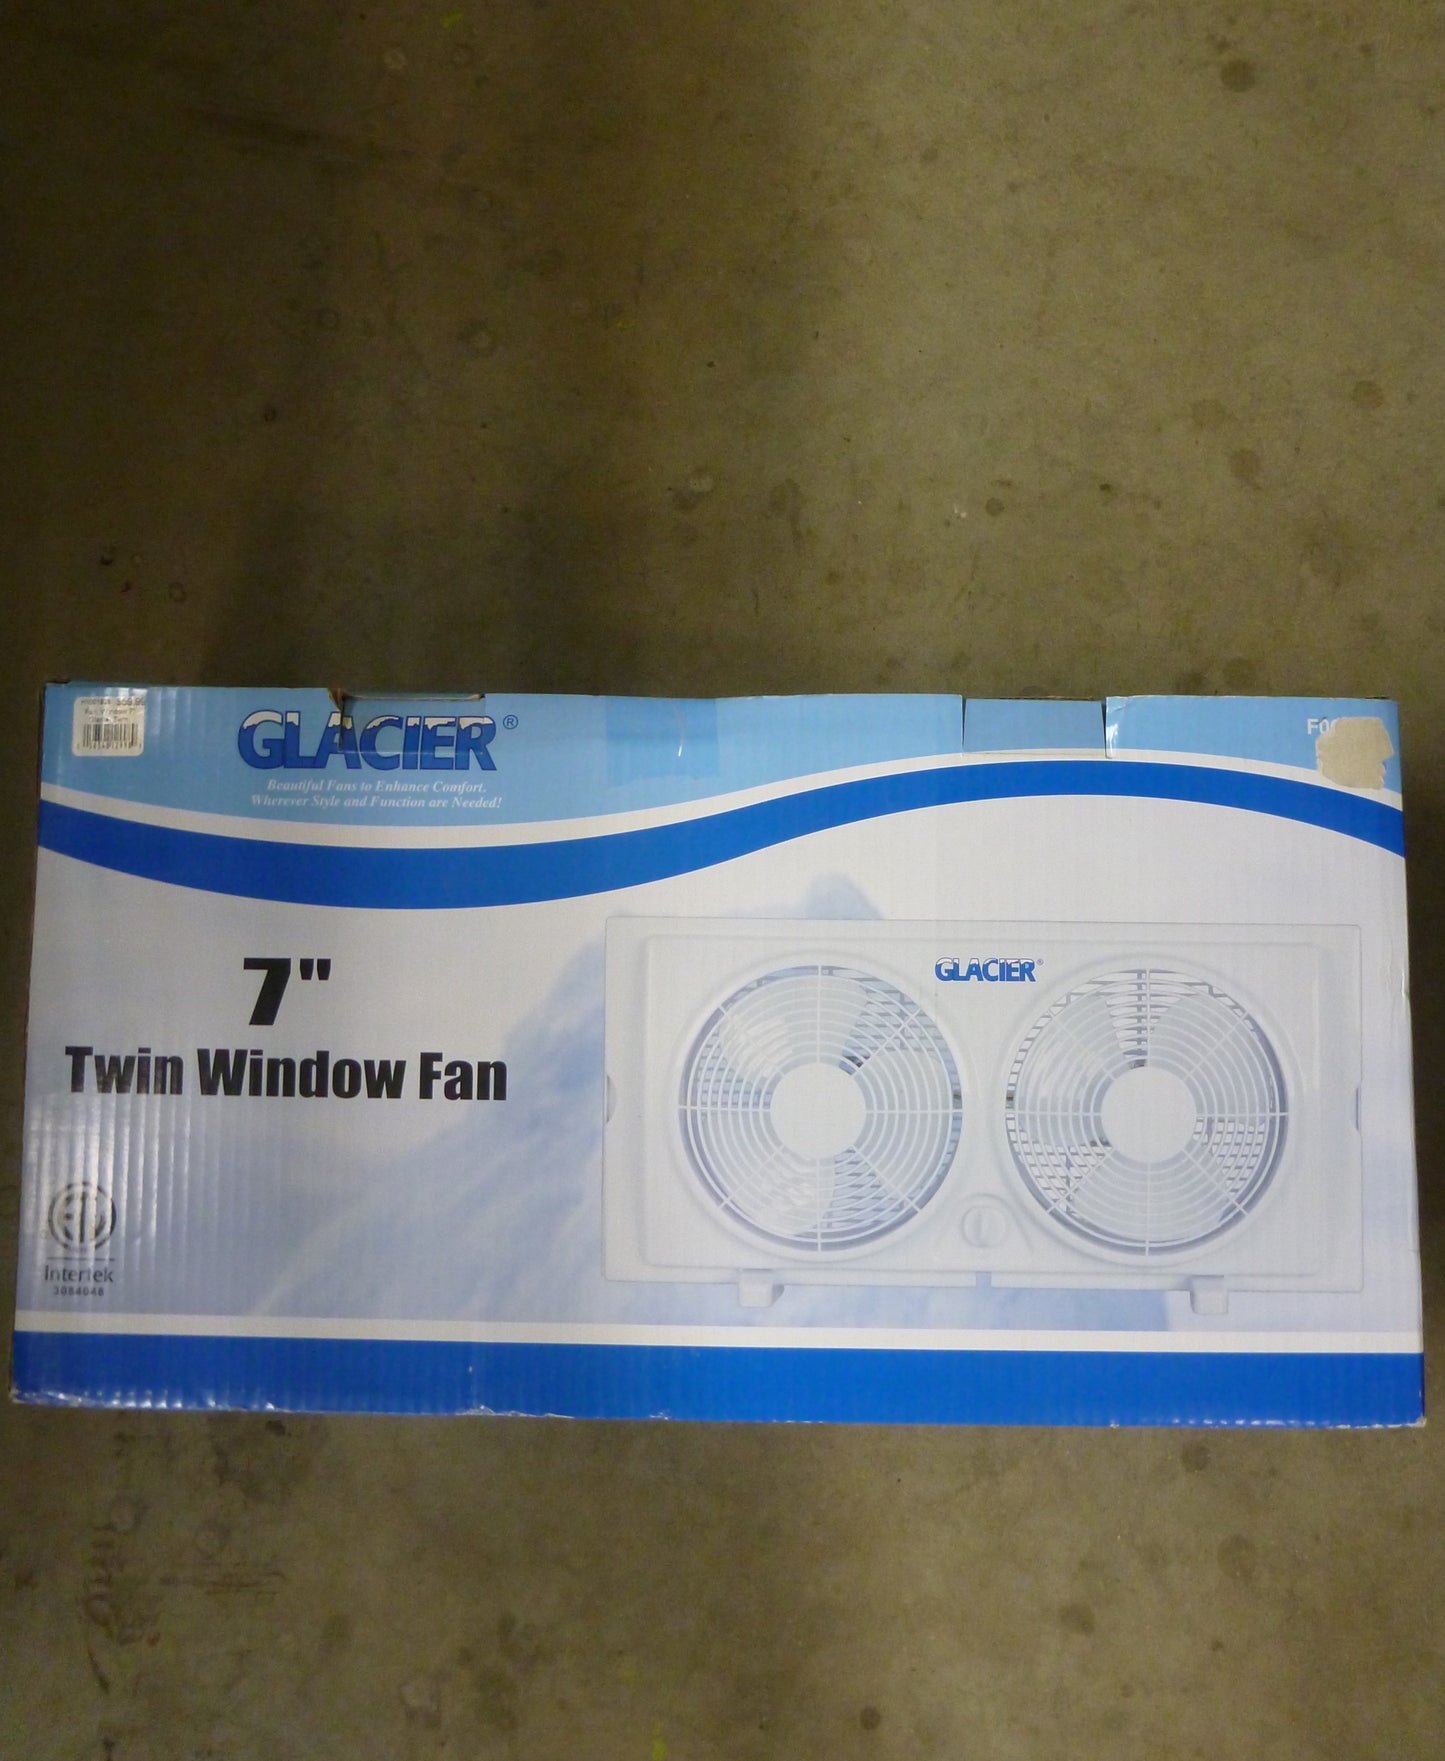 Fan Window 7" - Glacier Twin